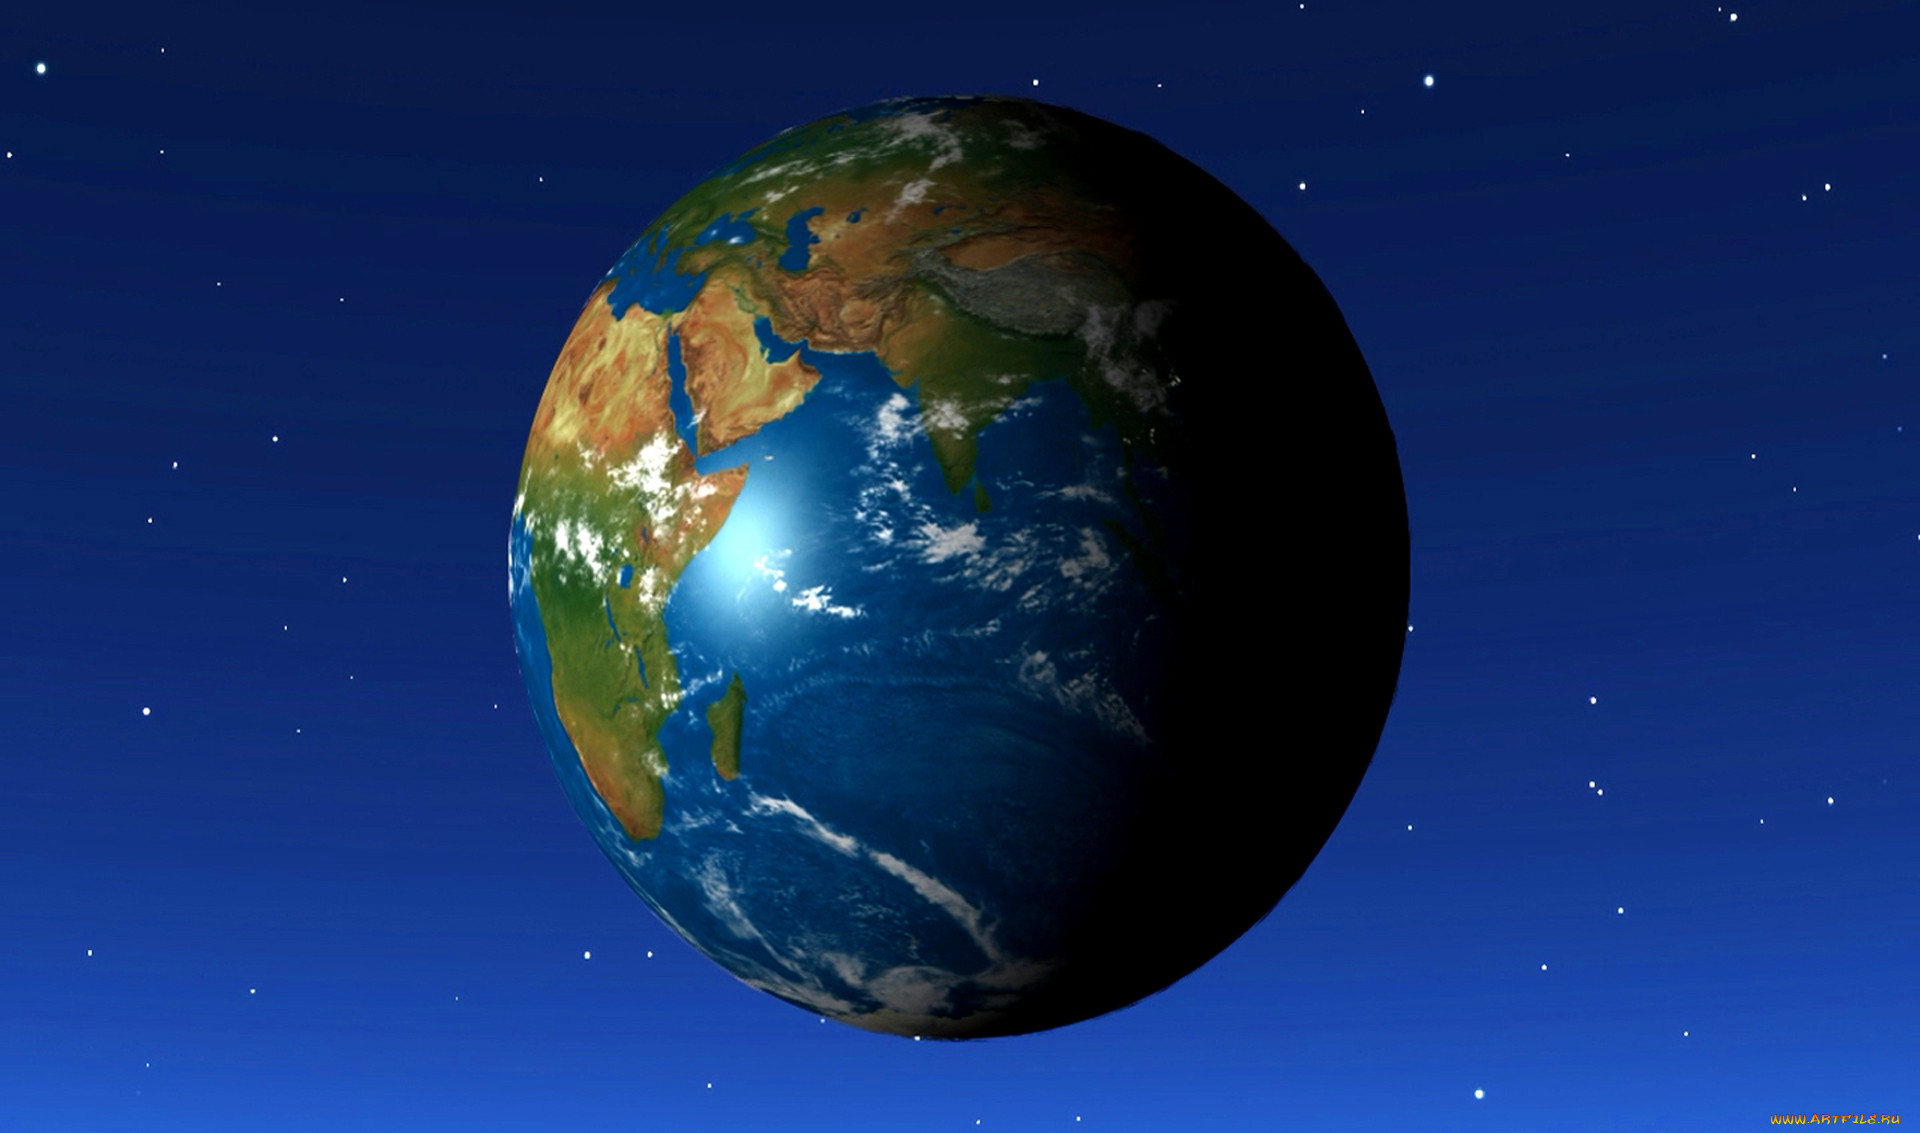 Картинка планета земля из космоса. Планета земля. Планета земля из космоса. Земной шар из космоса. О земле и космосе.